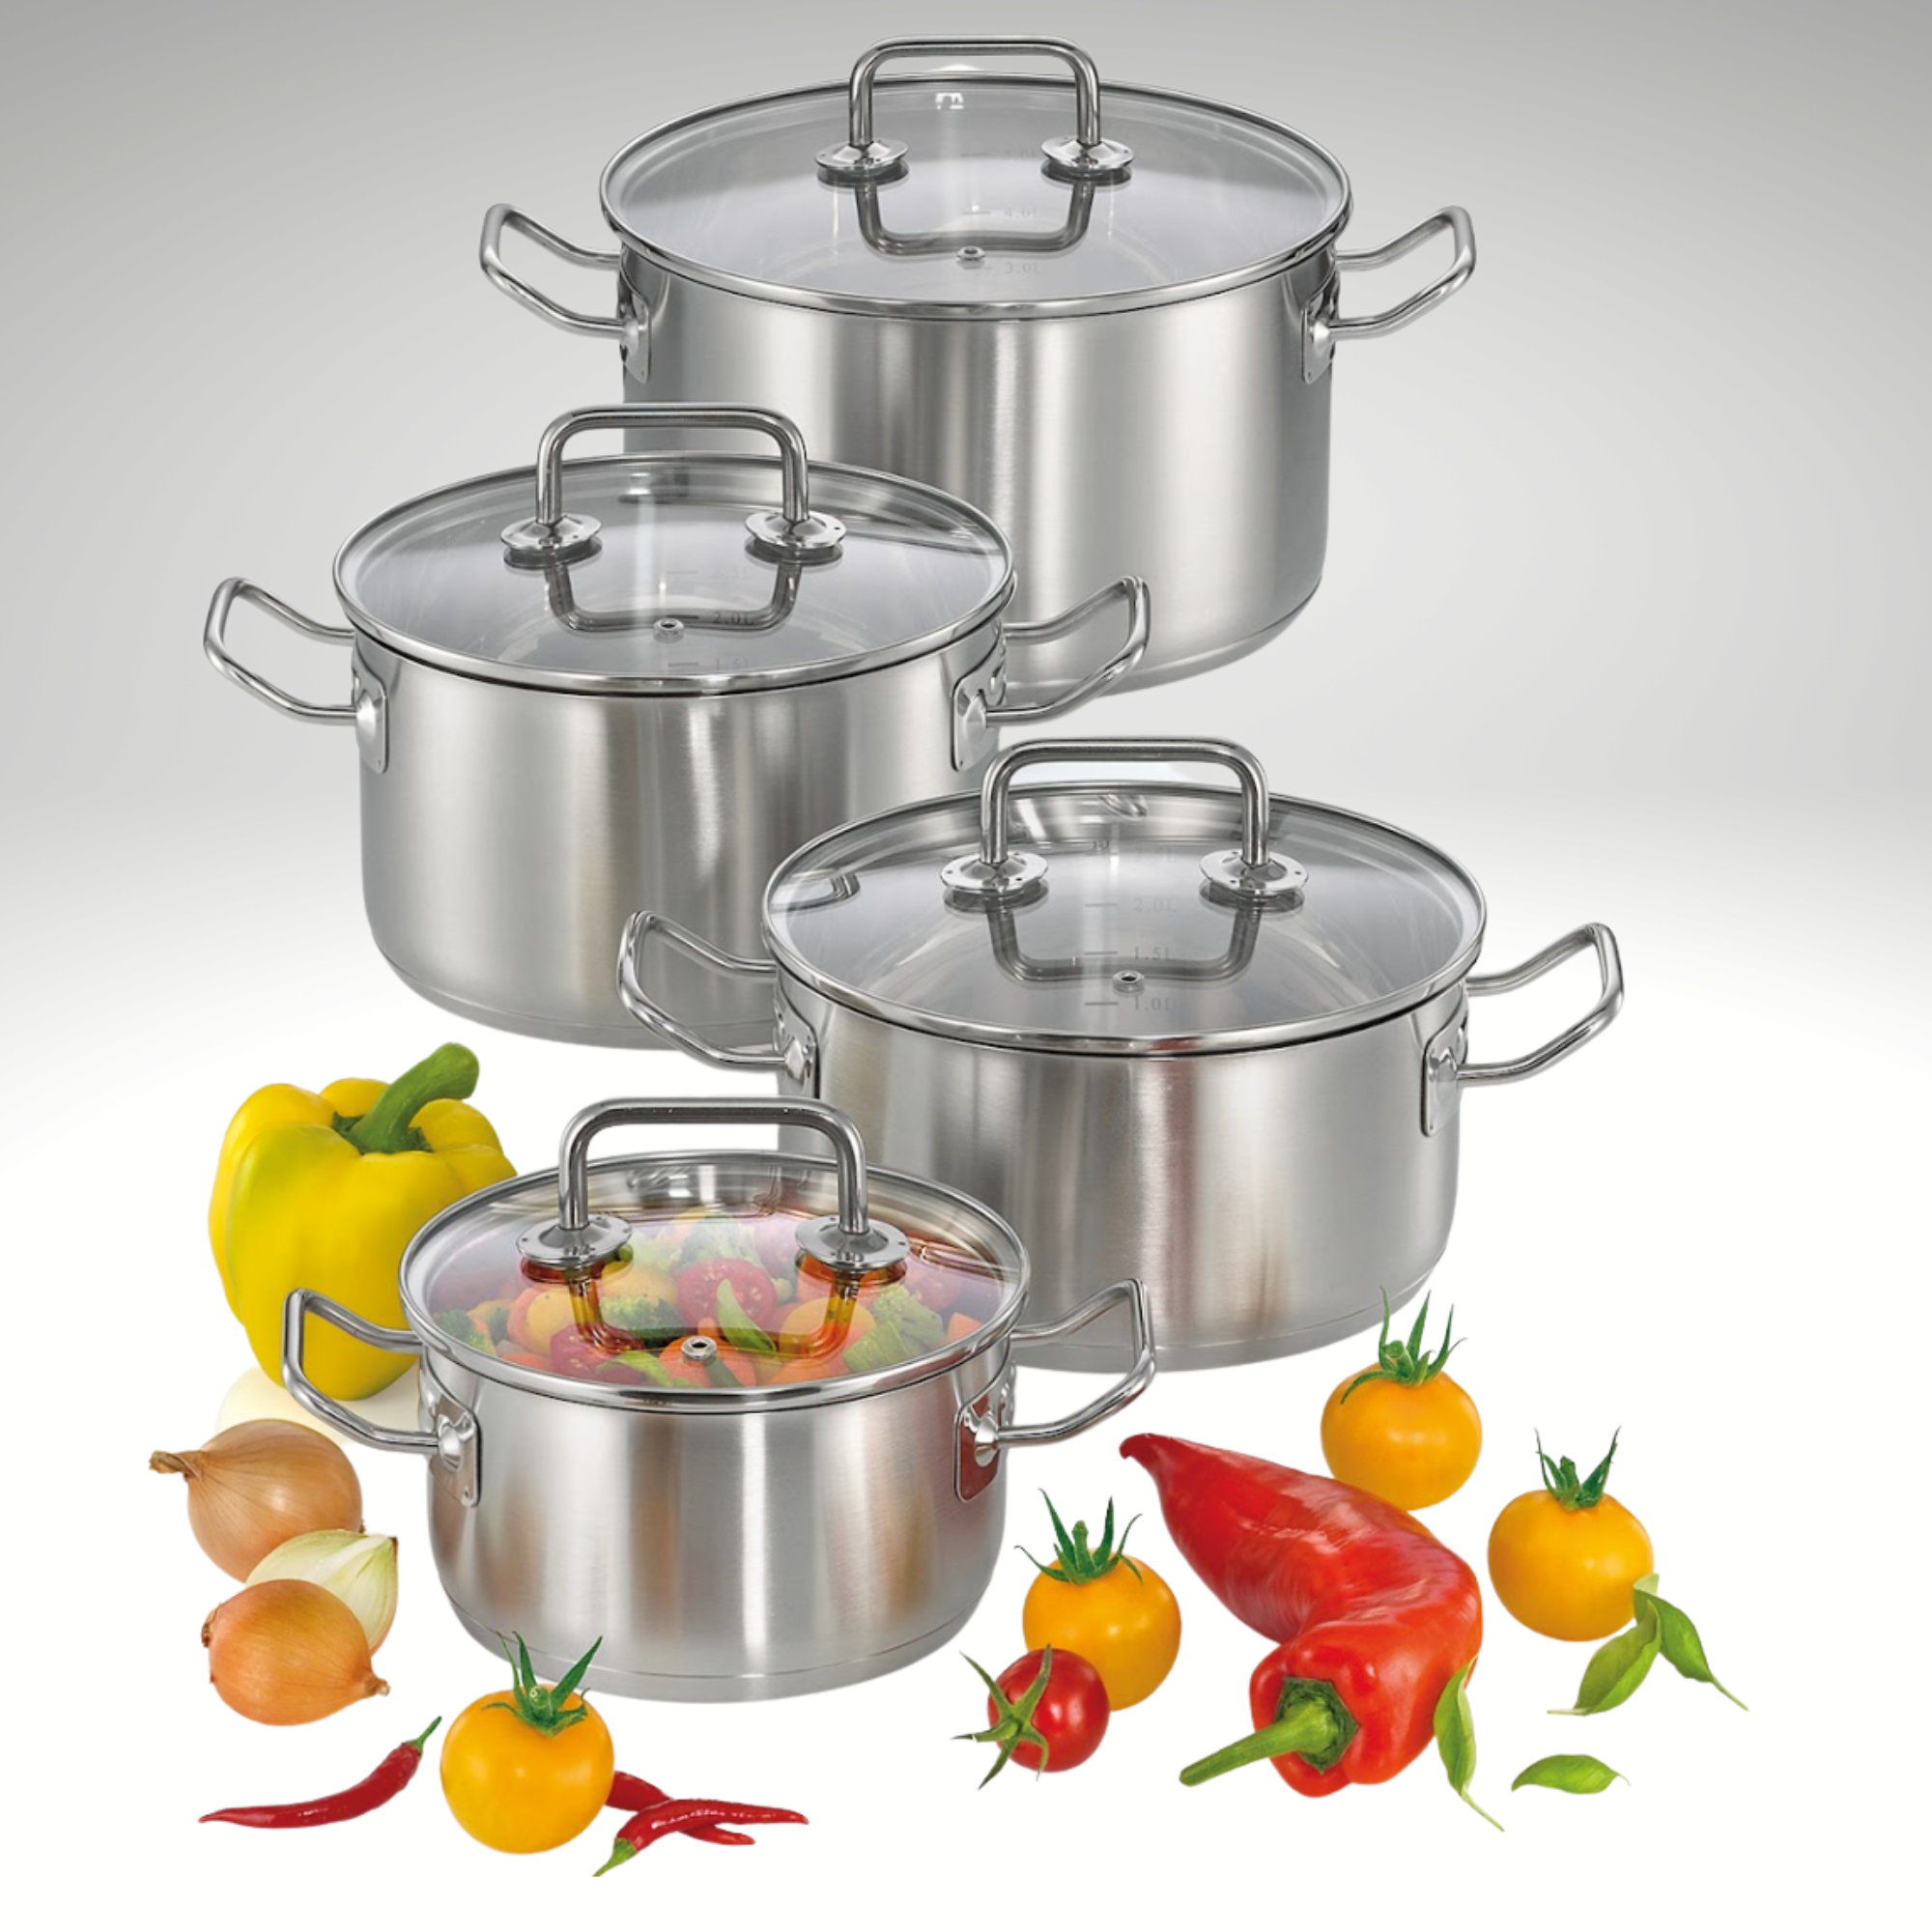 Kitchen Cookware: Pots, Pans, & More